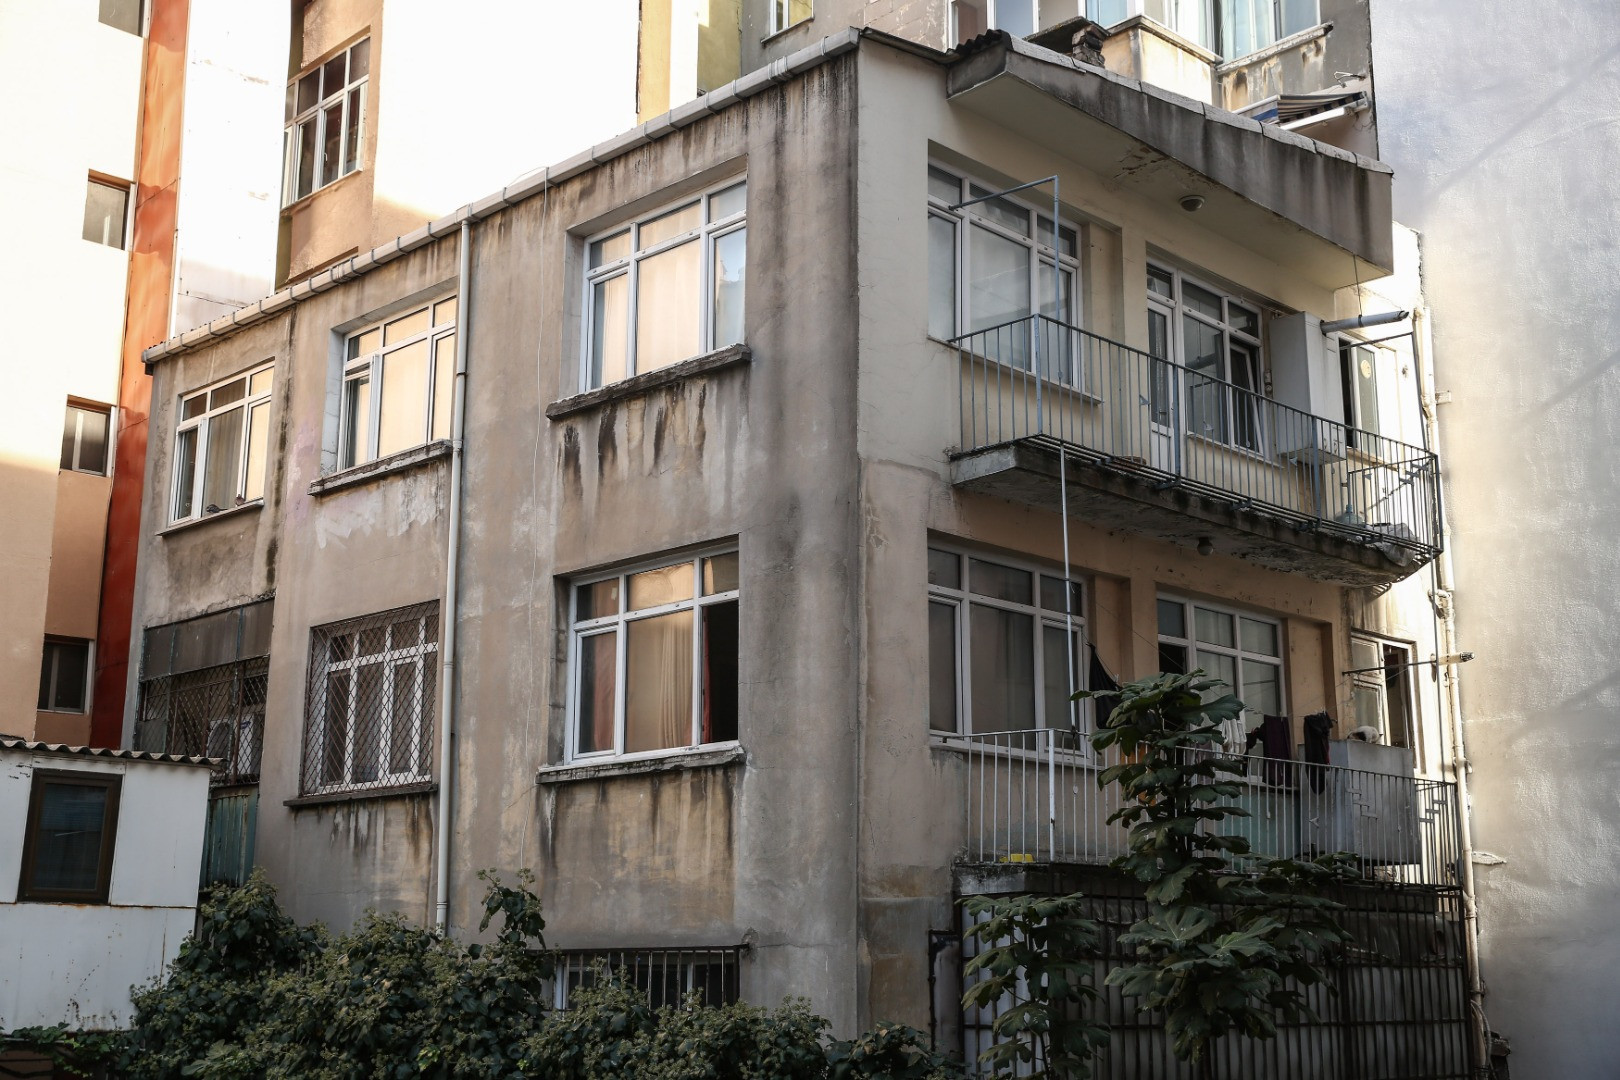 İstanbul'da 4 kardeşin ölü bulunduğu evden yürek parçalayan görüntüler